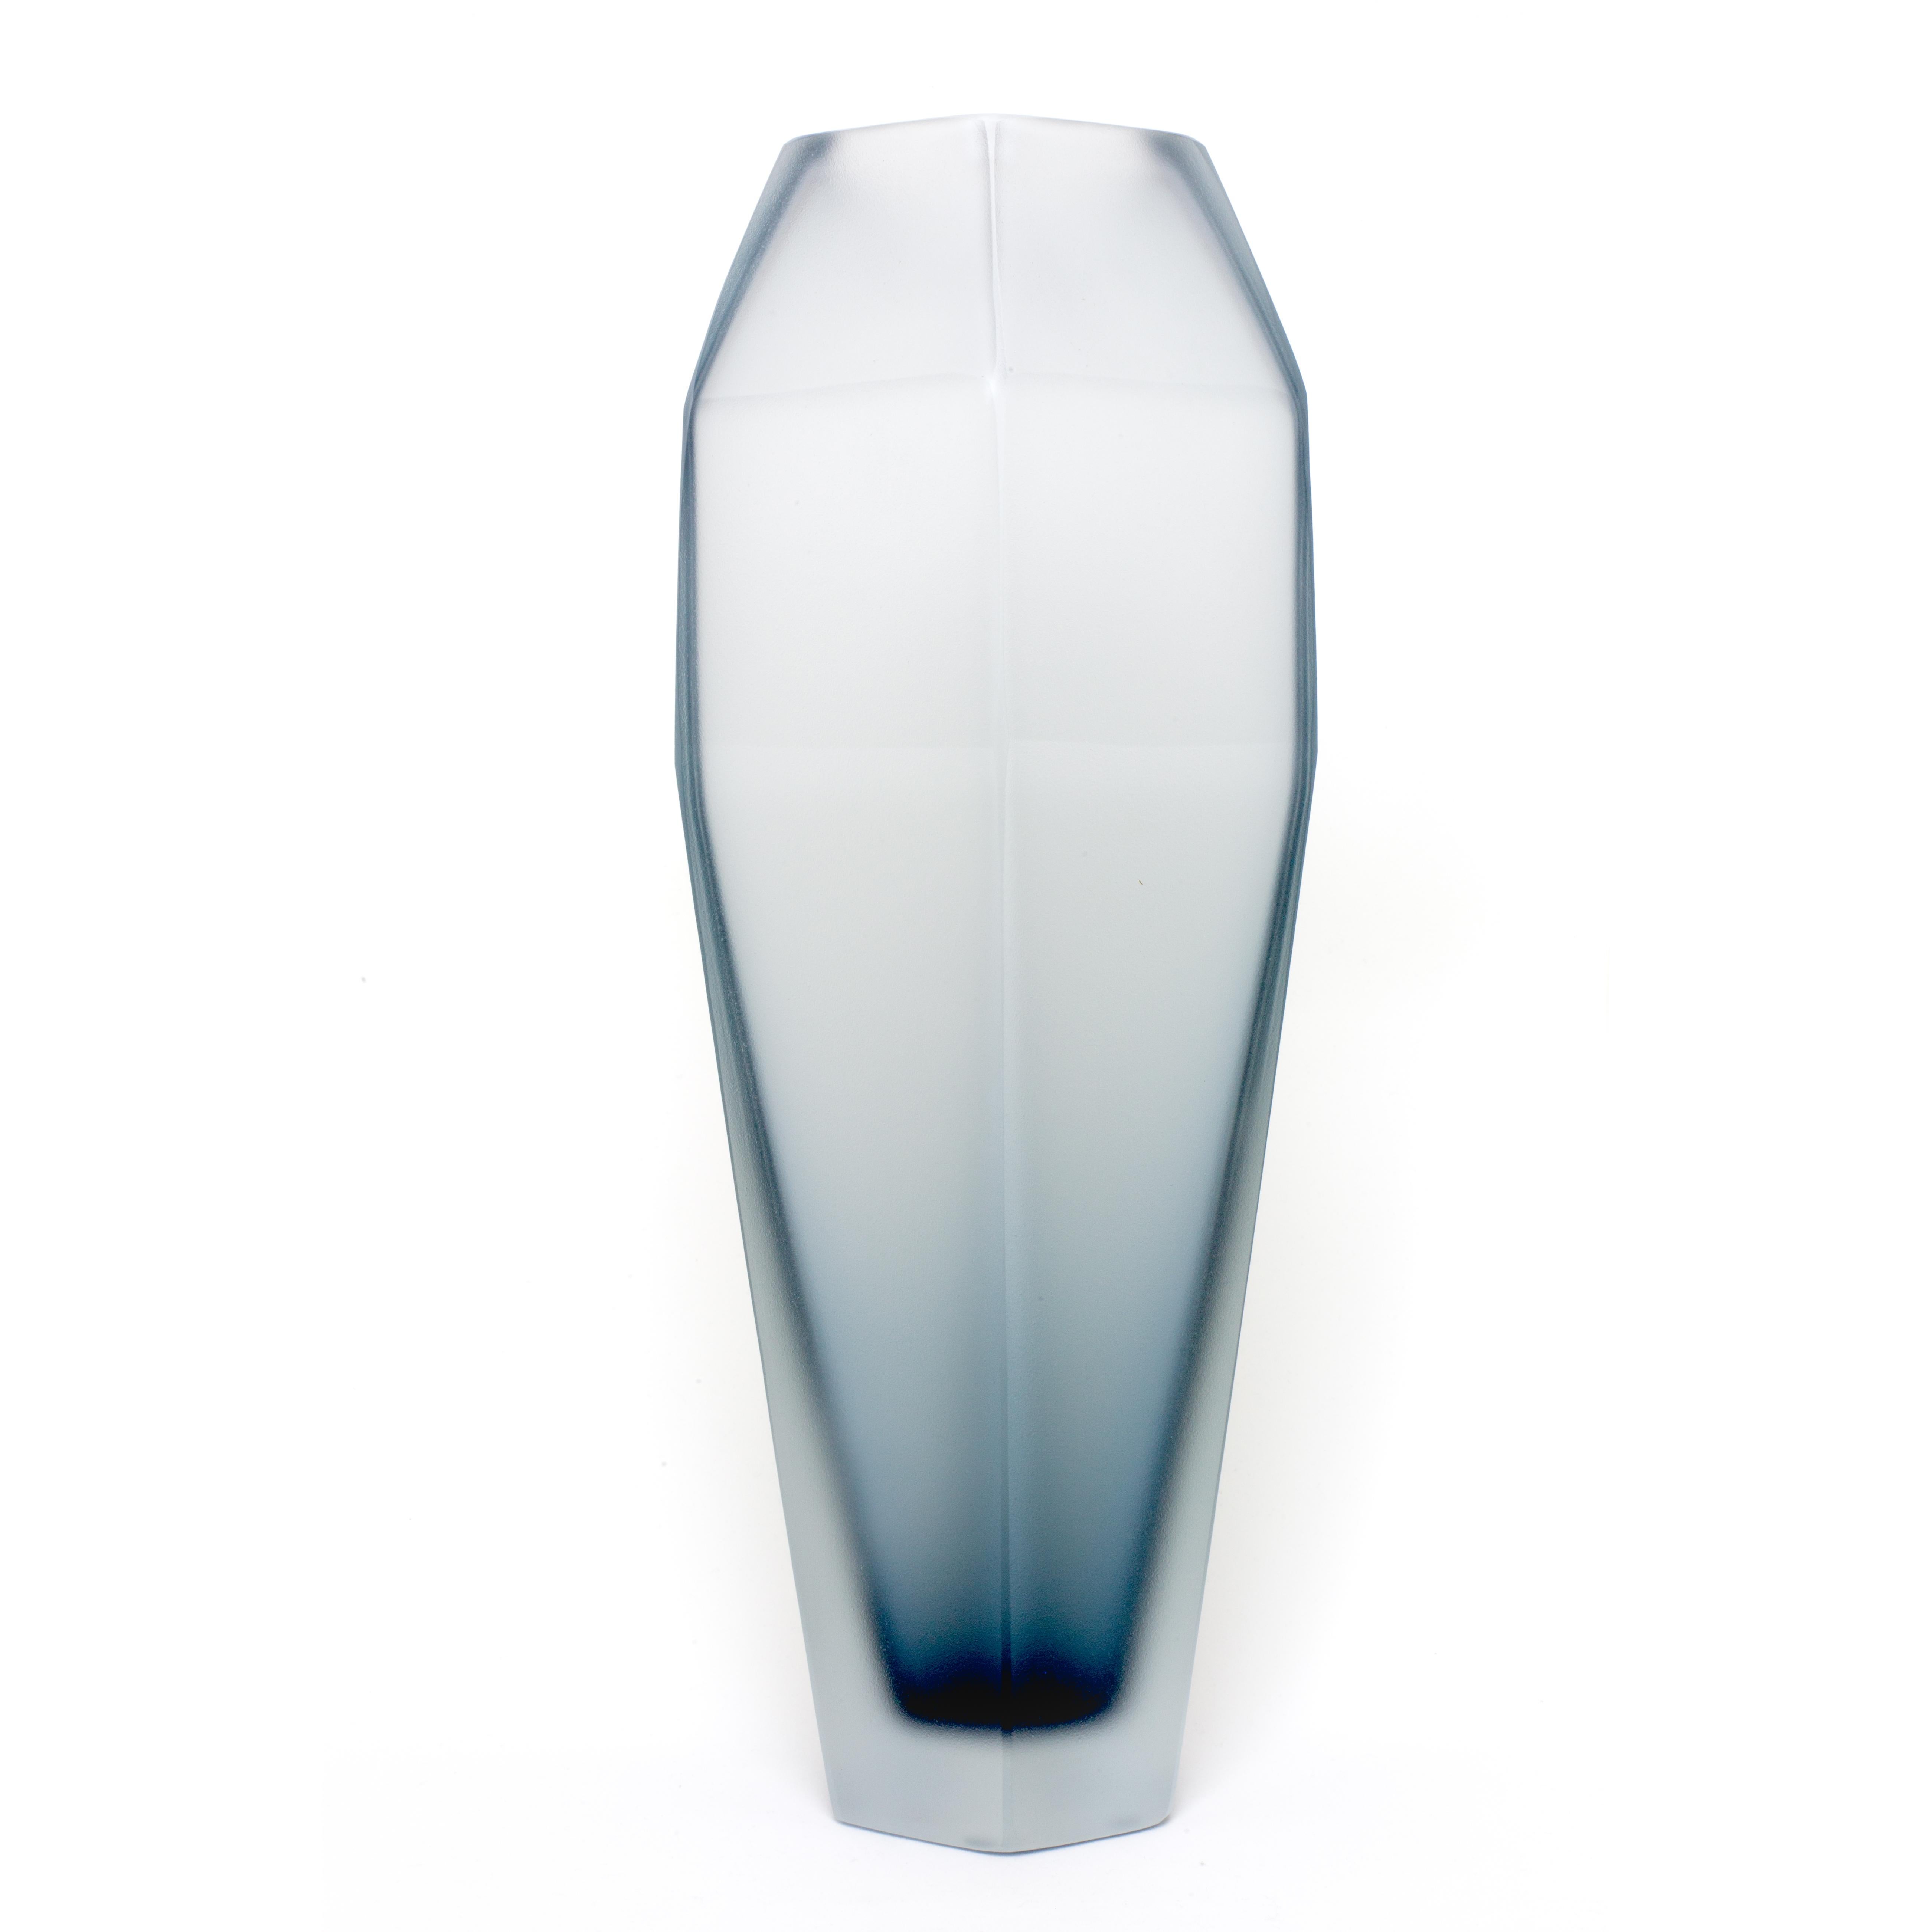 21. Jahrhundert Alessandro Mendini, Vase GEMELLO, Muranoglas, mattiert.
Mit den beiden Vasen Gemello und Gemella, die von Alessandro Mendini entworfen wurden, setzt Purho die Suche nach Produkten mit komplementären Formen fort. Die Vasen, die das